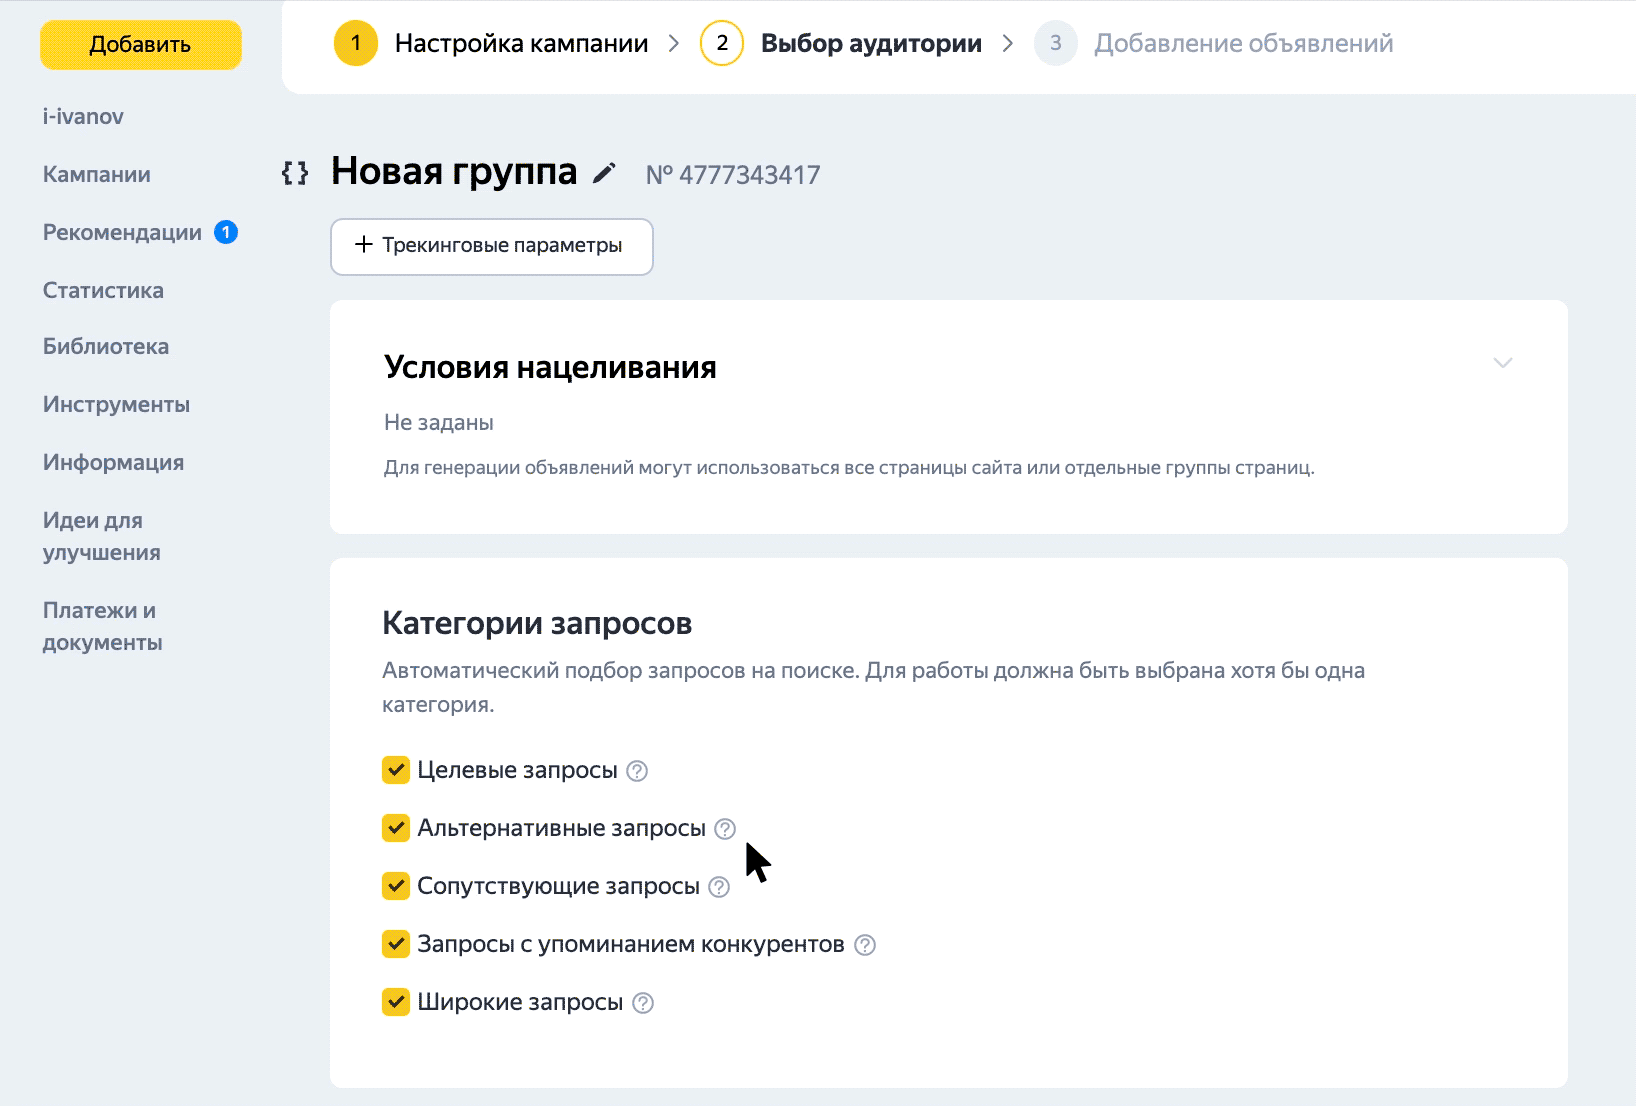 В Яндекс Директе теперь можно управлять категориями запросов для показа динамических объявлений